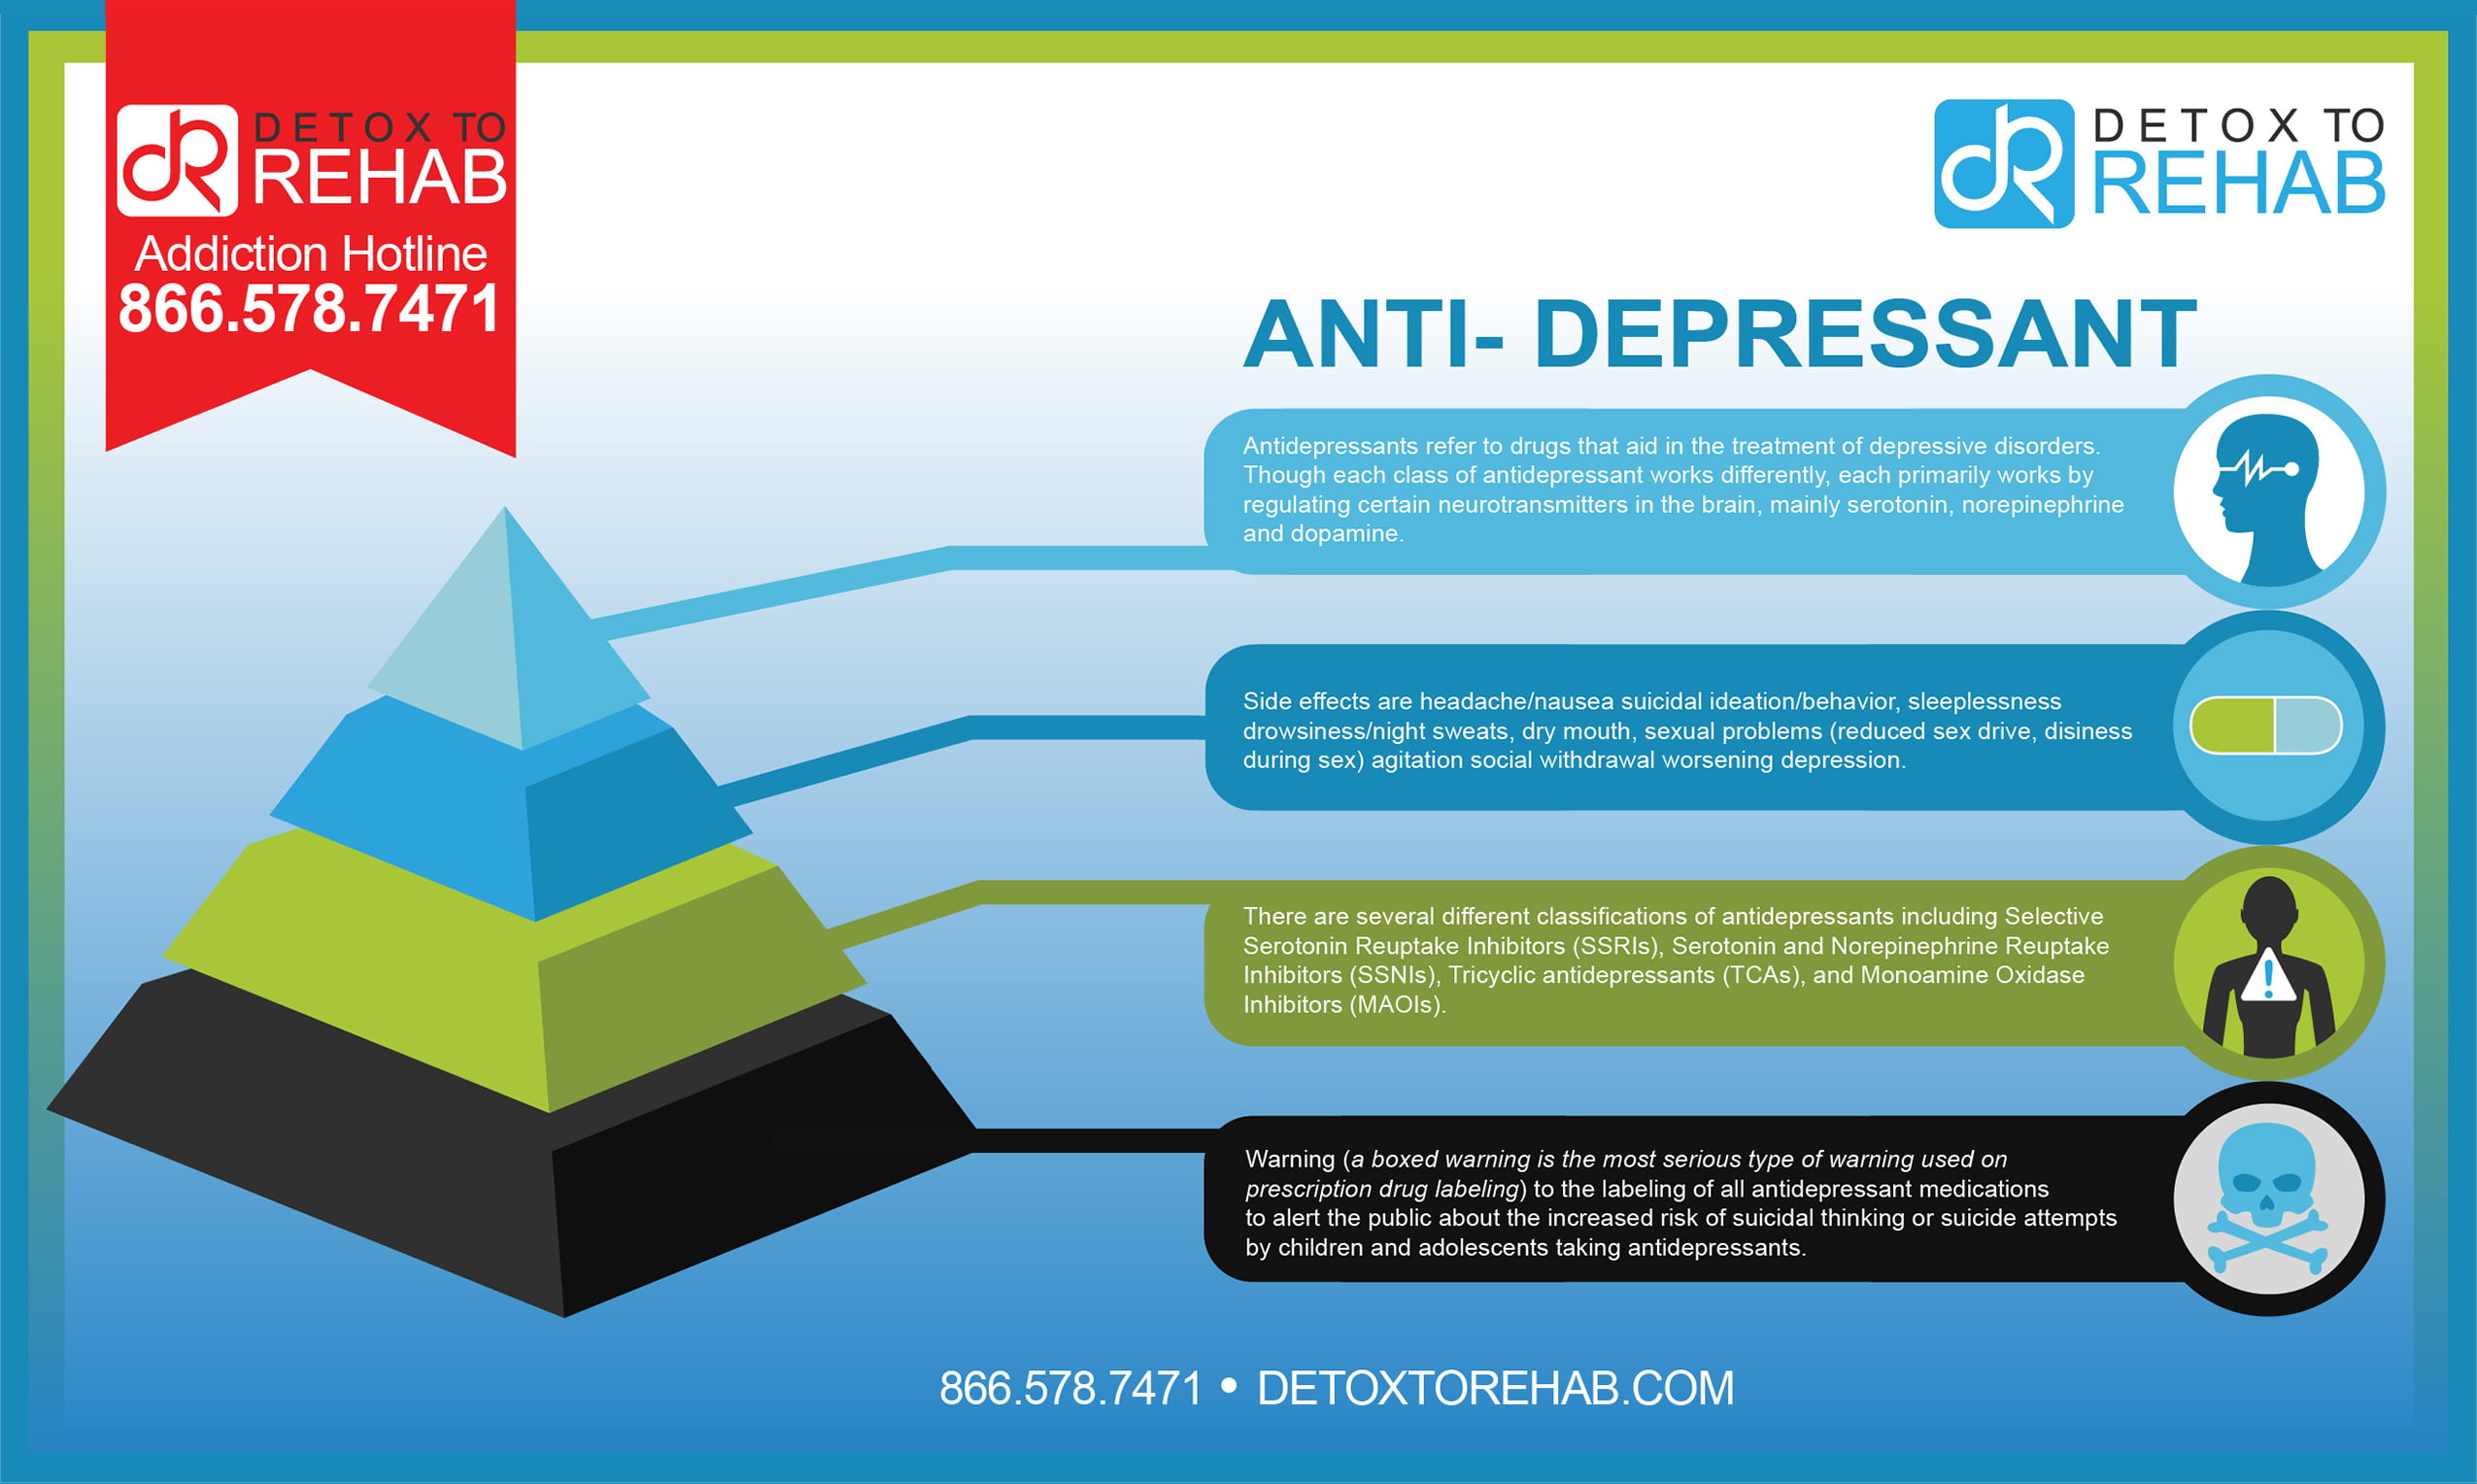 anti-depressants-infographic-detox-to-rehab